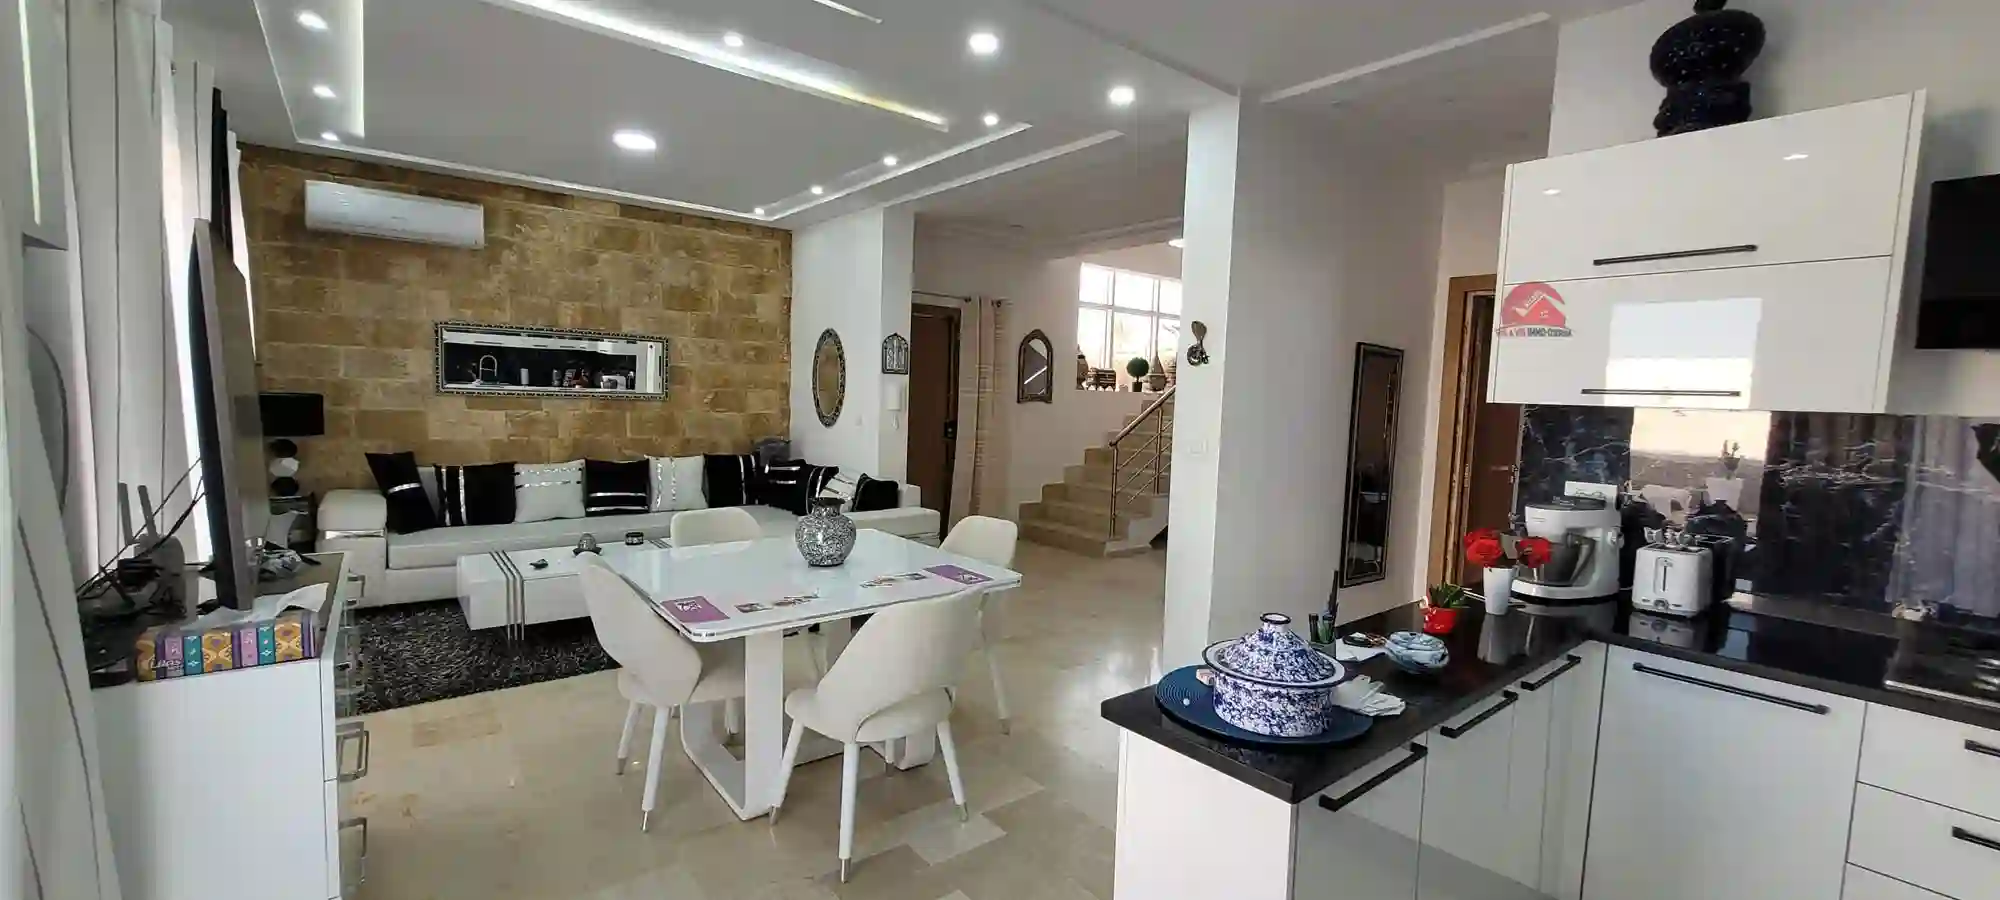 Vente Villa Meublée à Aghir Djerba – réf V6720